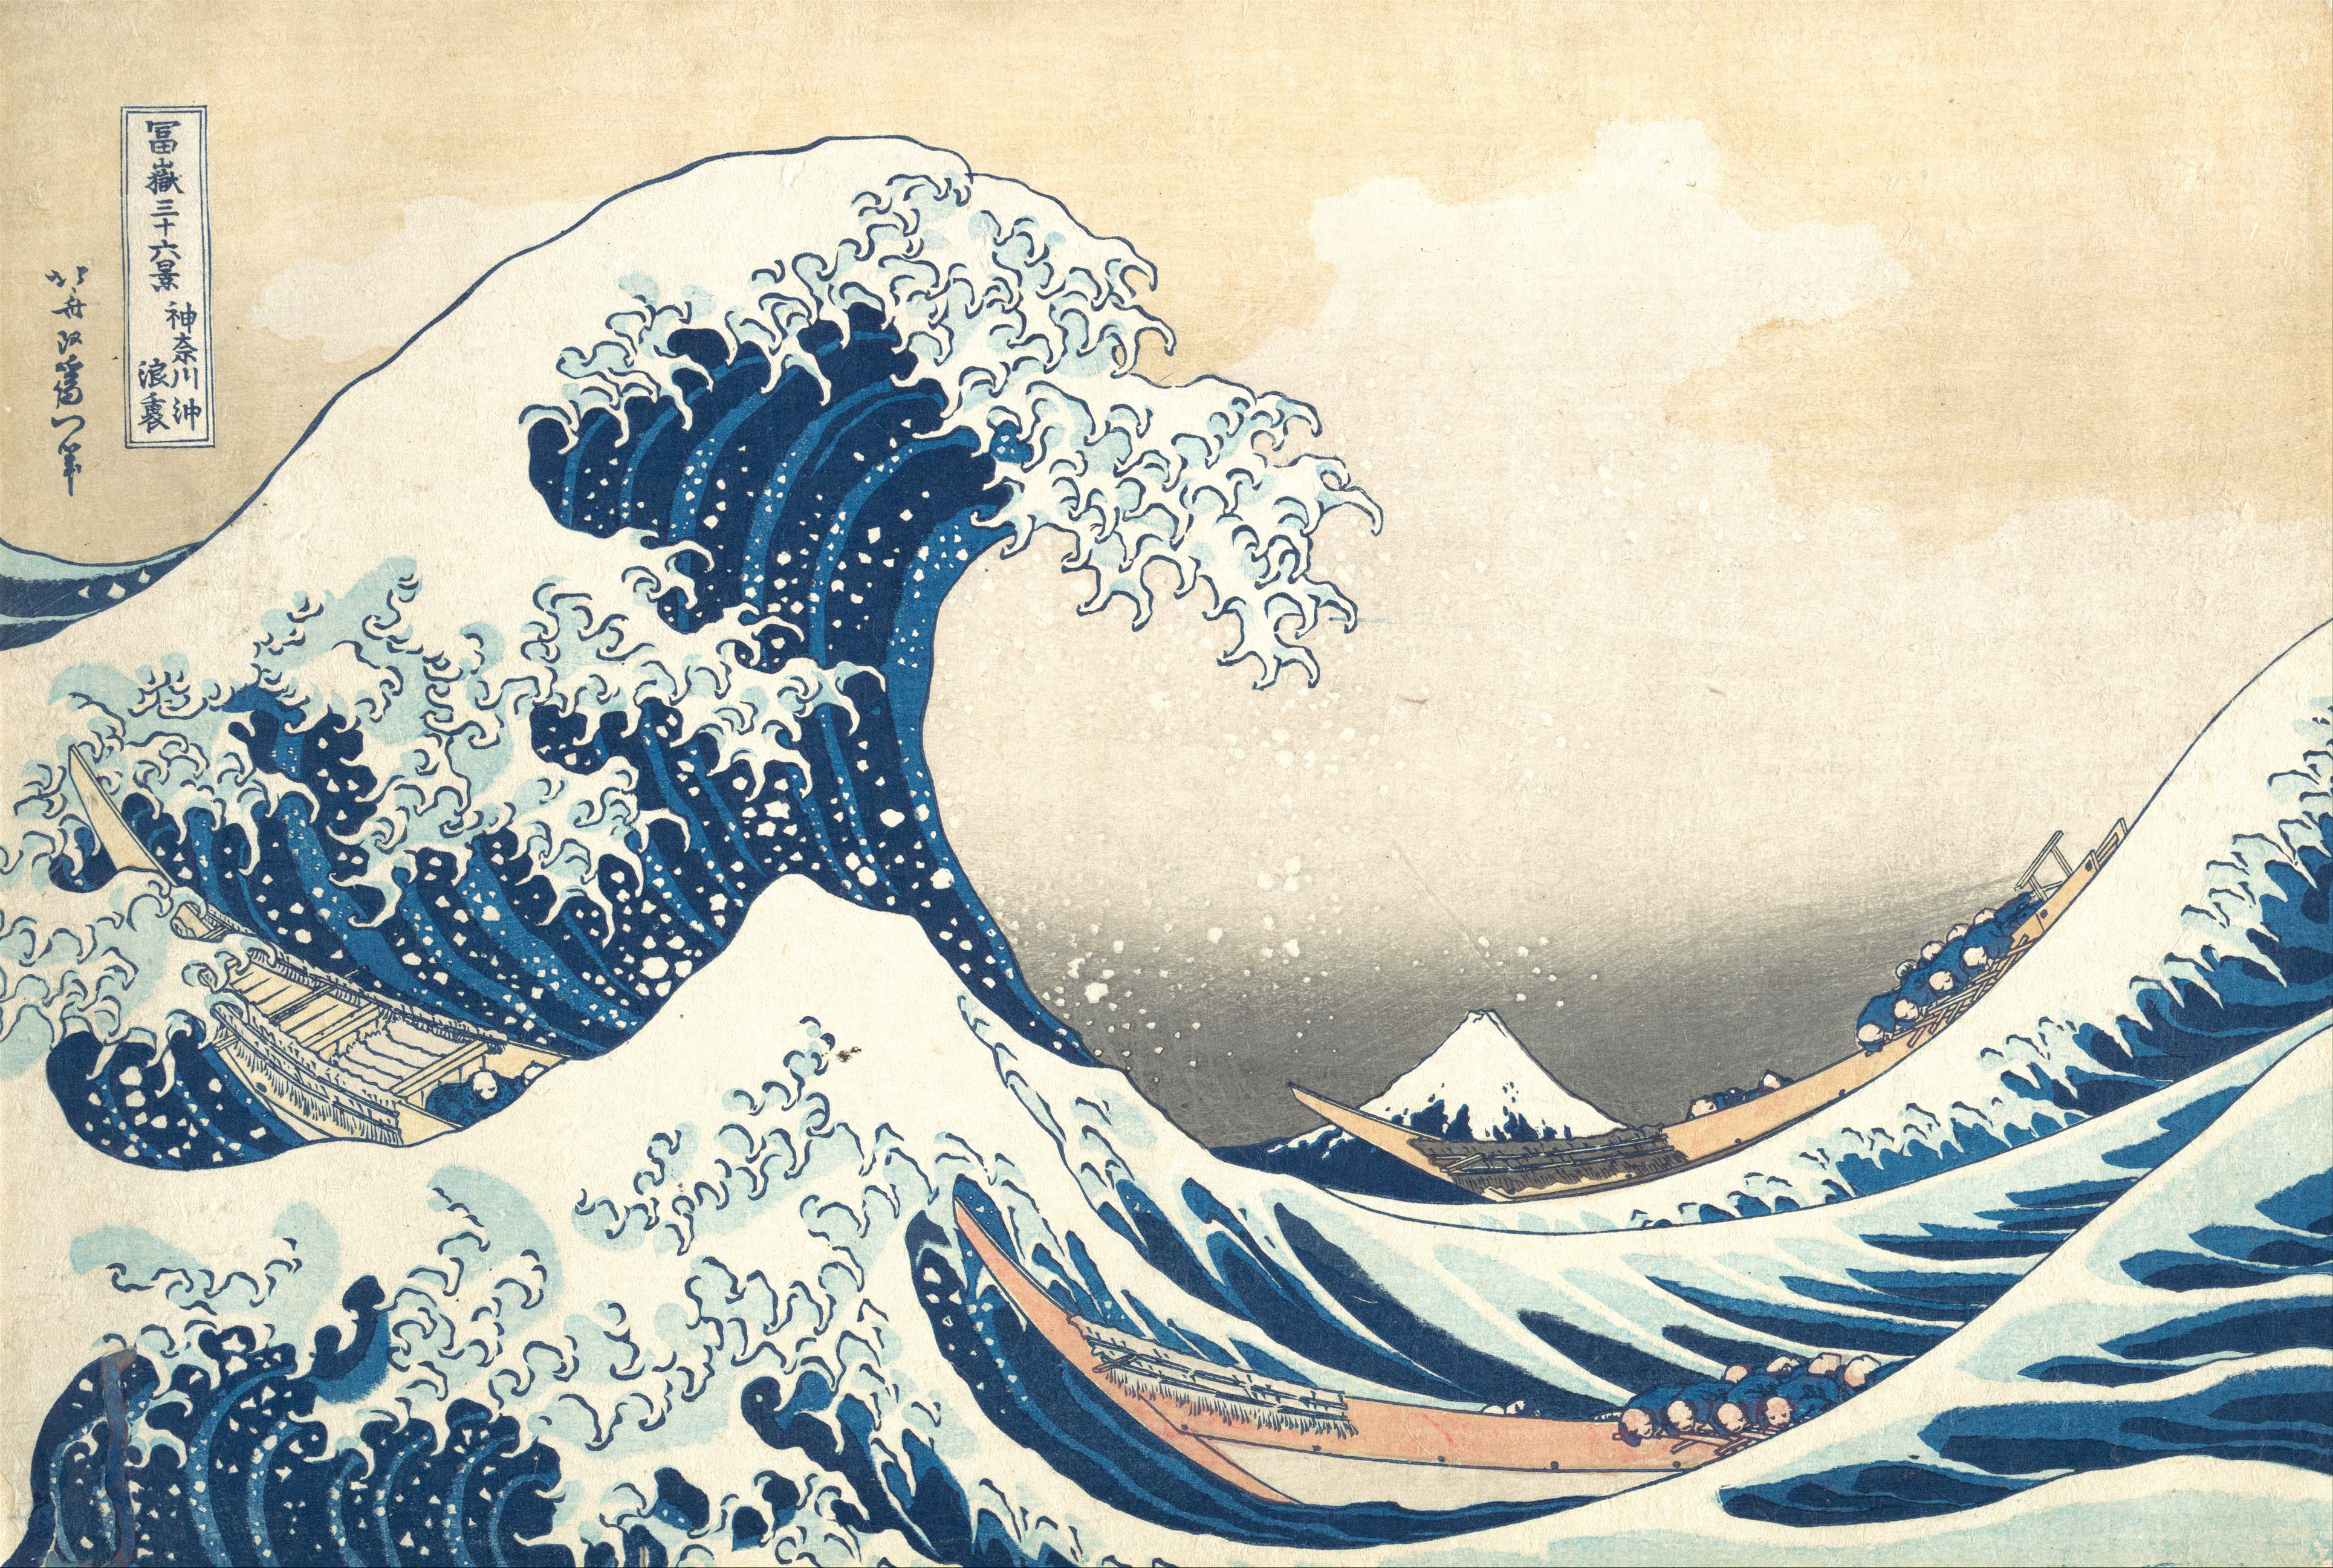 The Great Wave off Kanagawa (神奈川沖浪裏 Kanagawa-oki nami ura, 